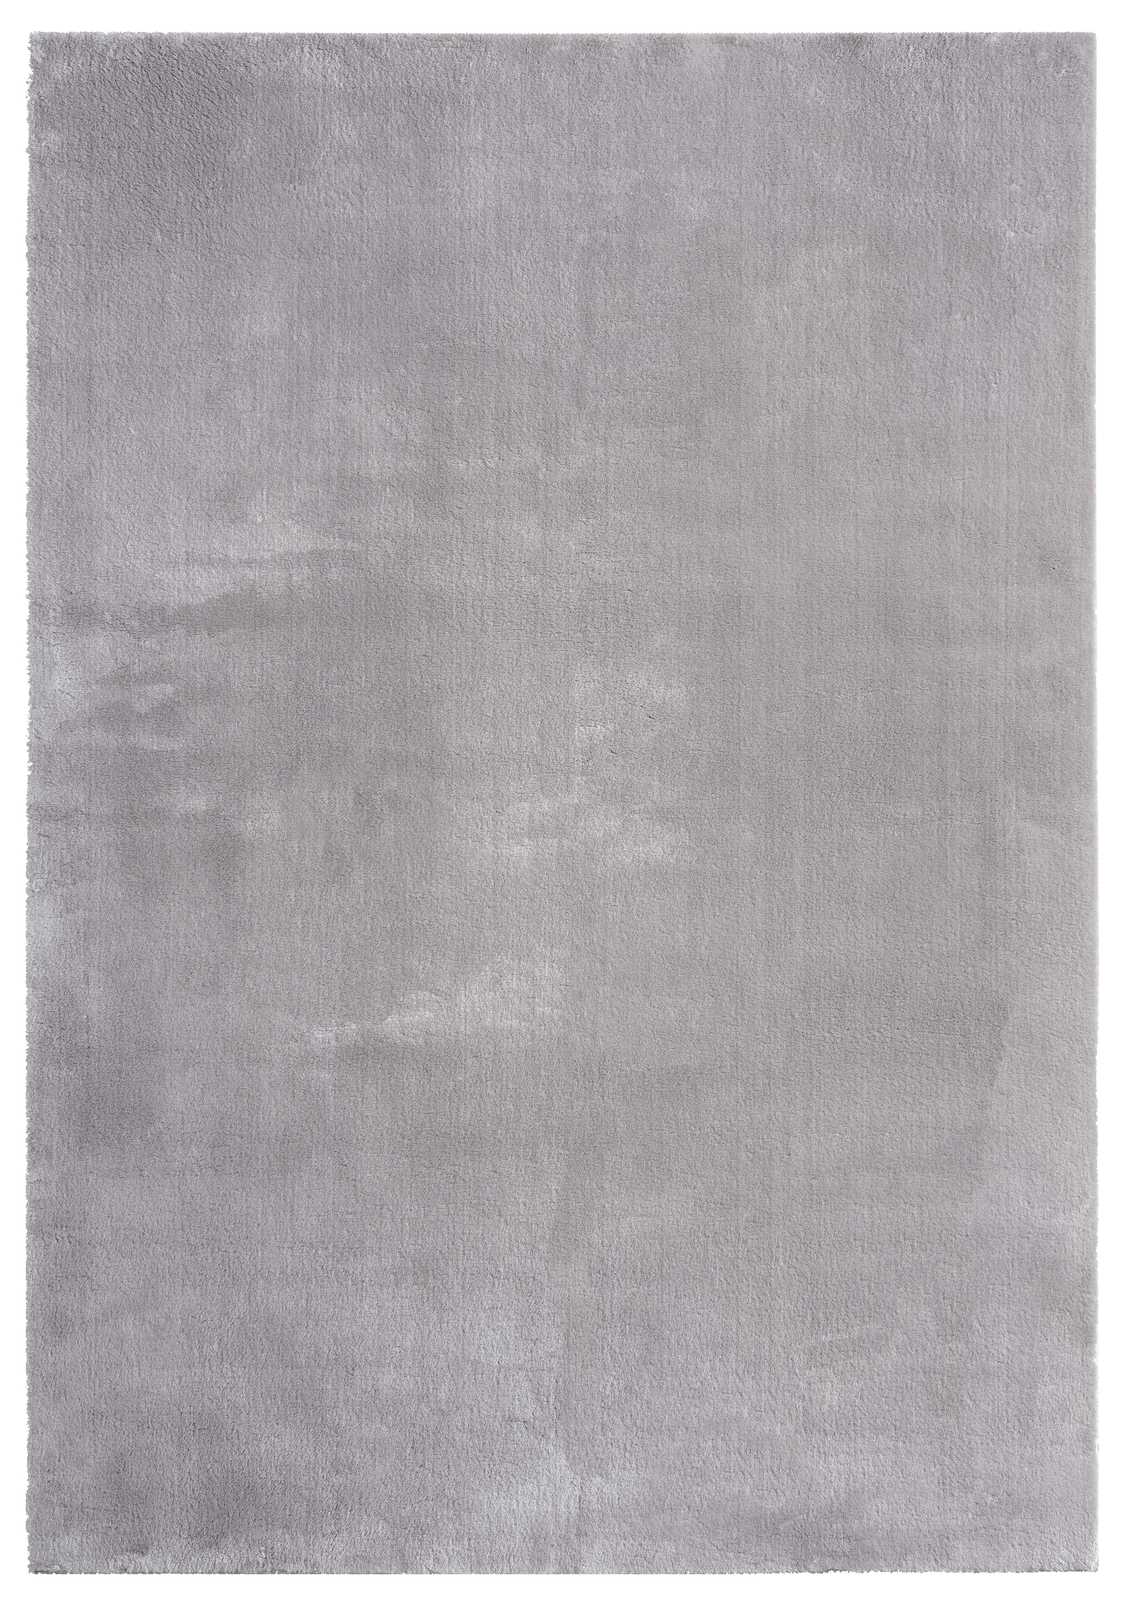             Tappeto a pelo alto fine di colore grigio - 110 x 60 cm
        